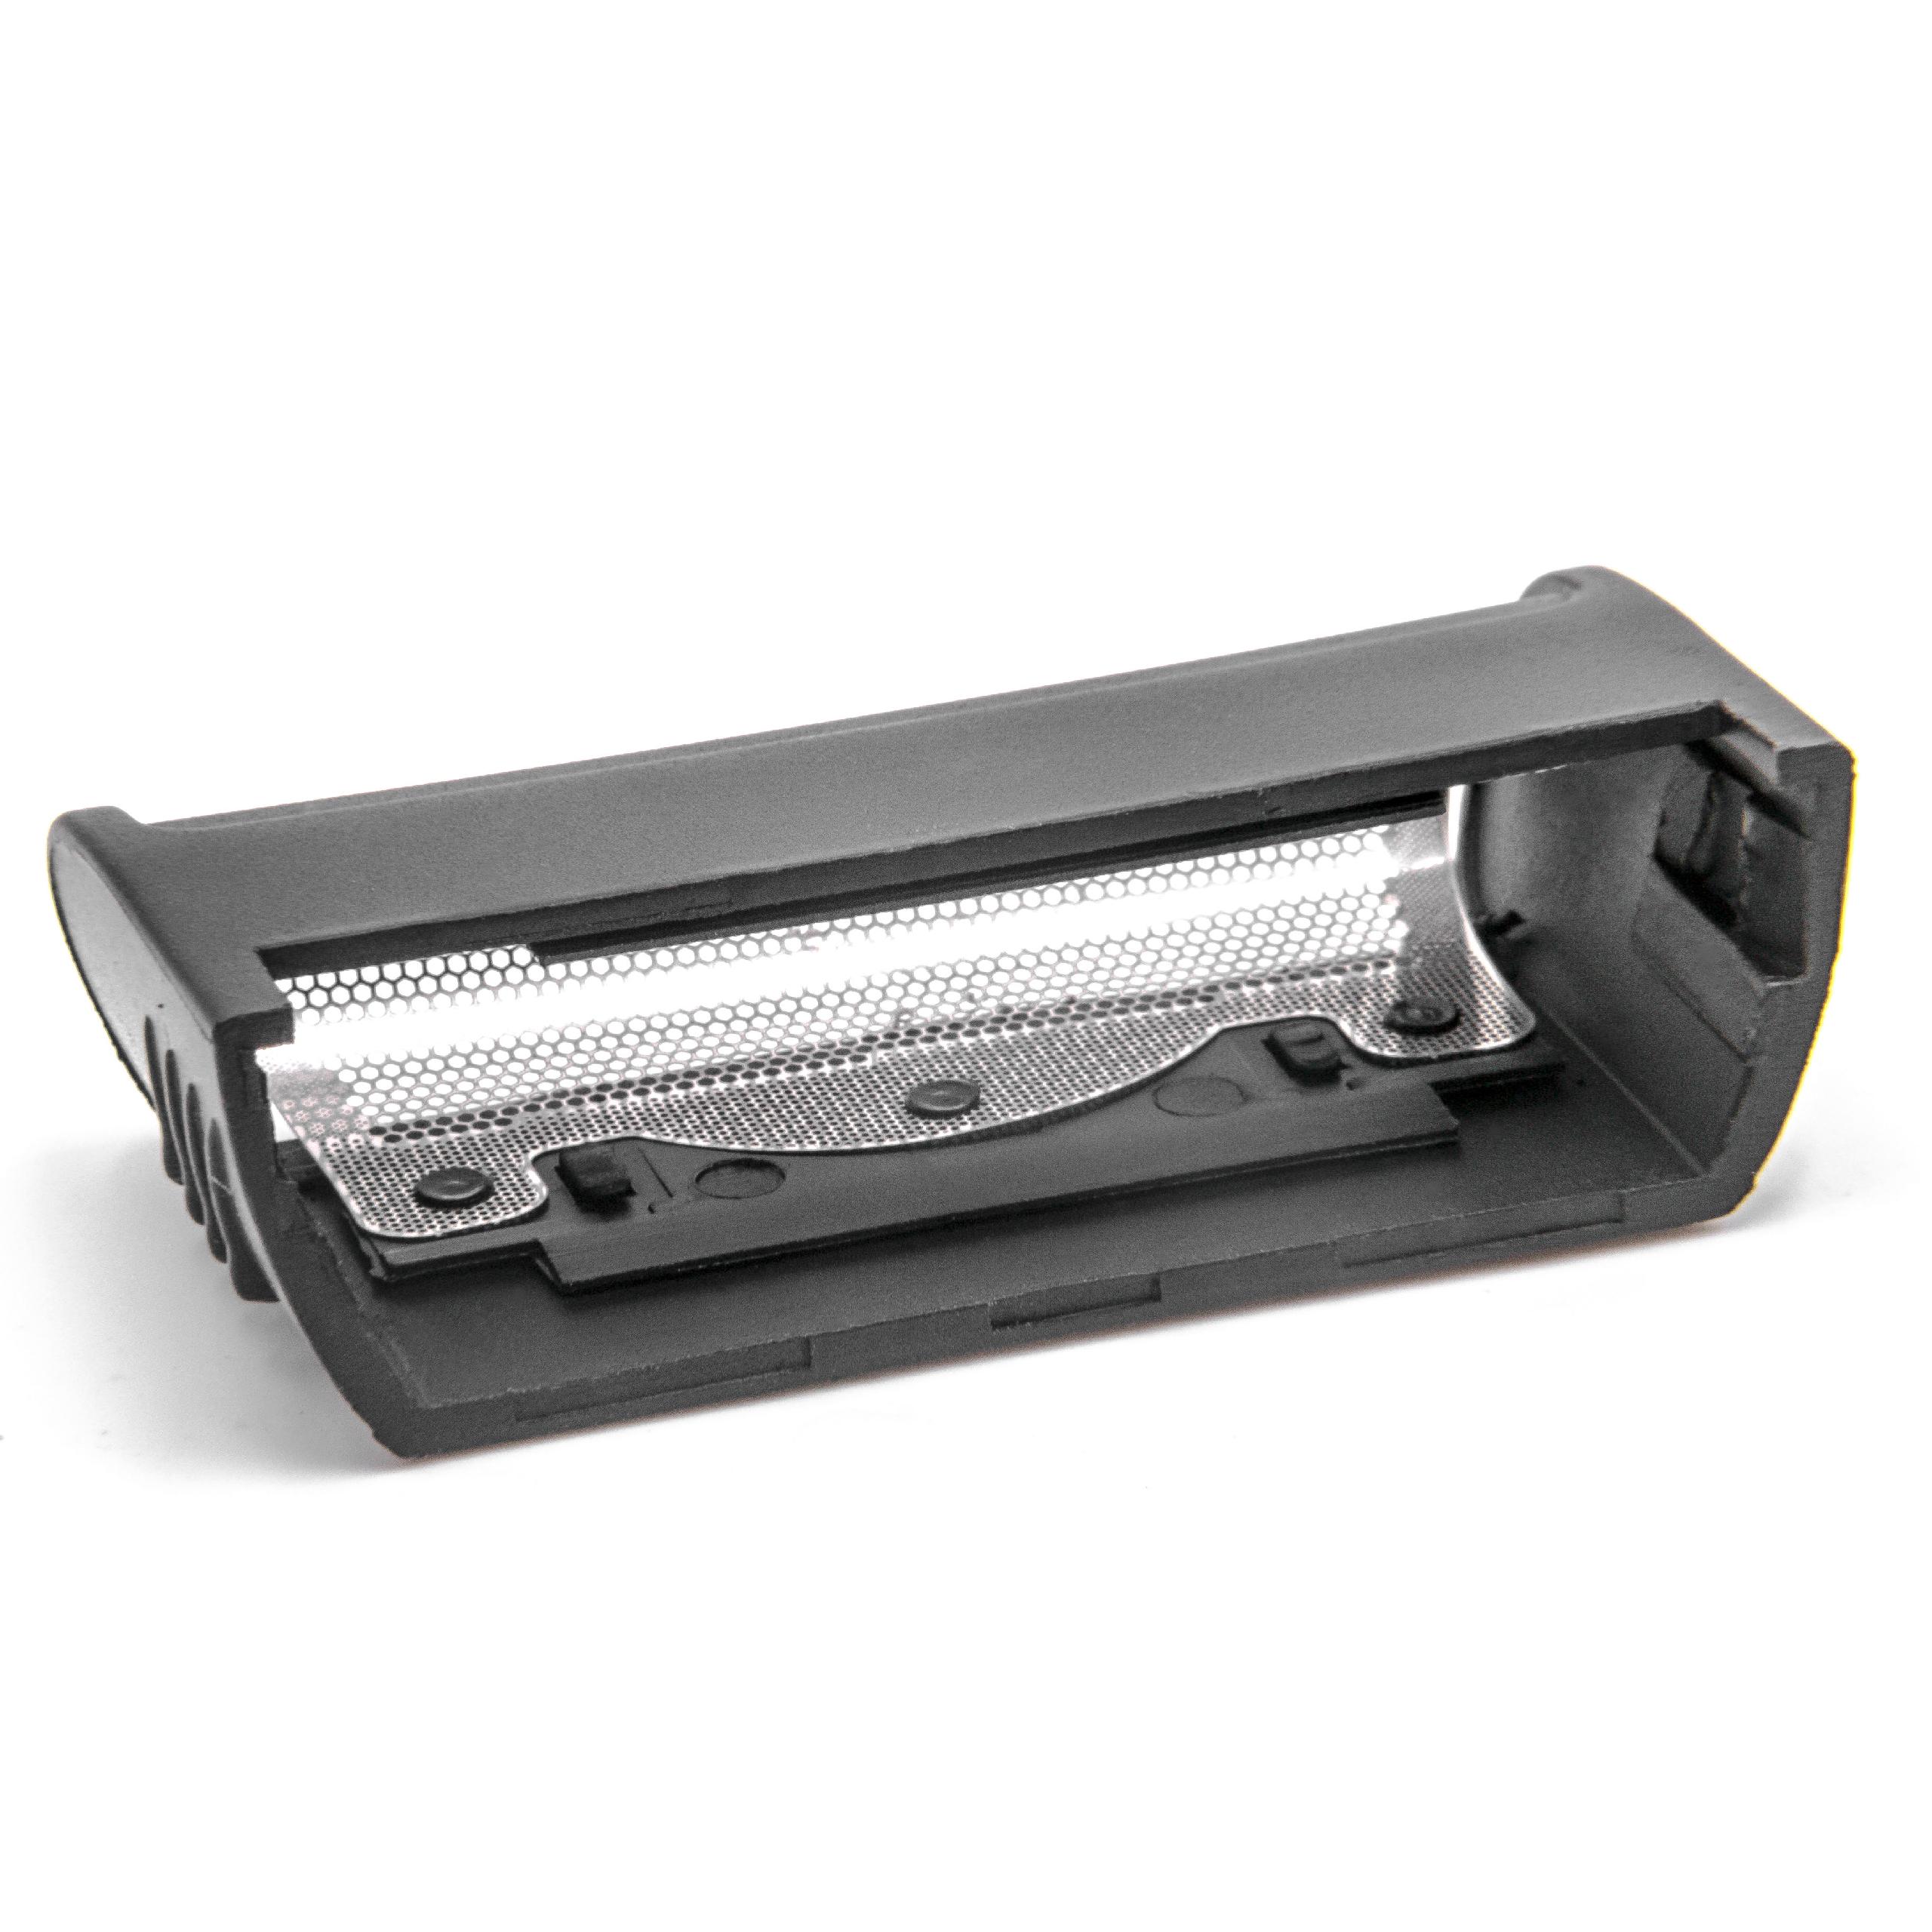 Combi Pack Shaver Part suitable for Braun 1008 Razor - Foil + Blades, Black/Silver